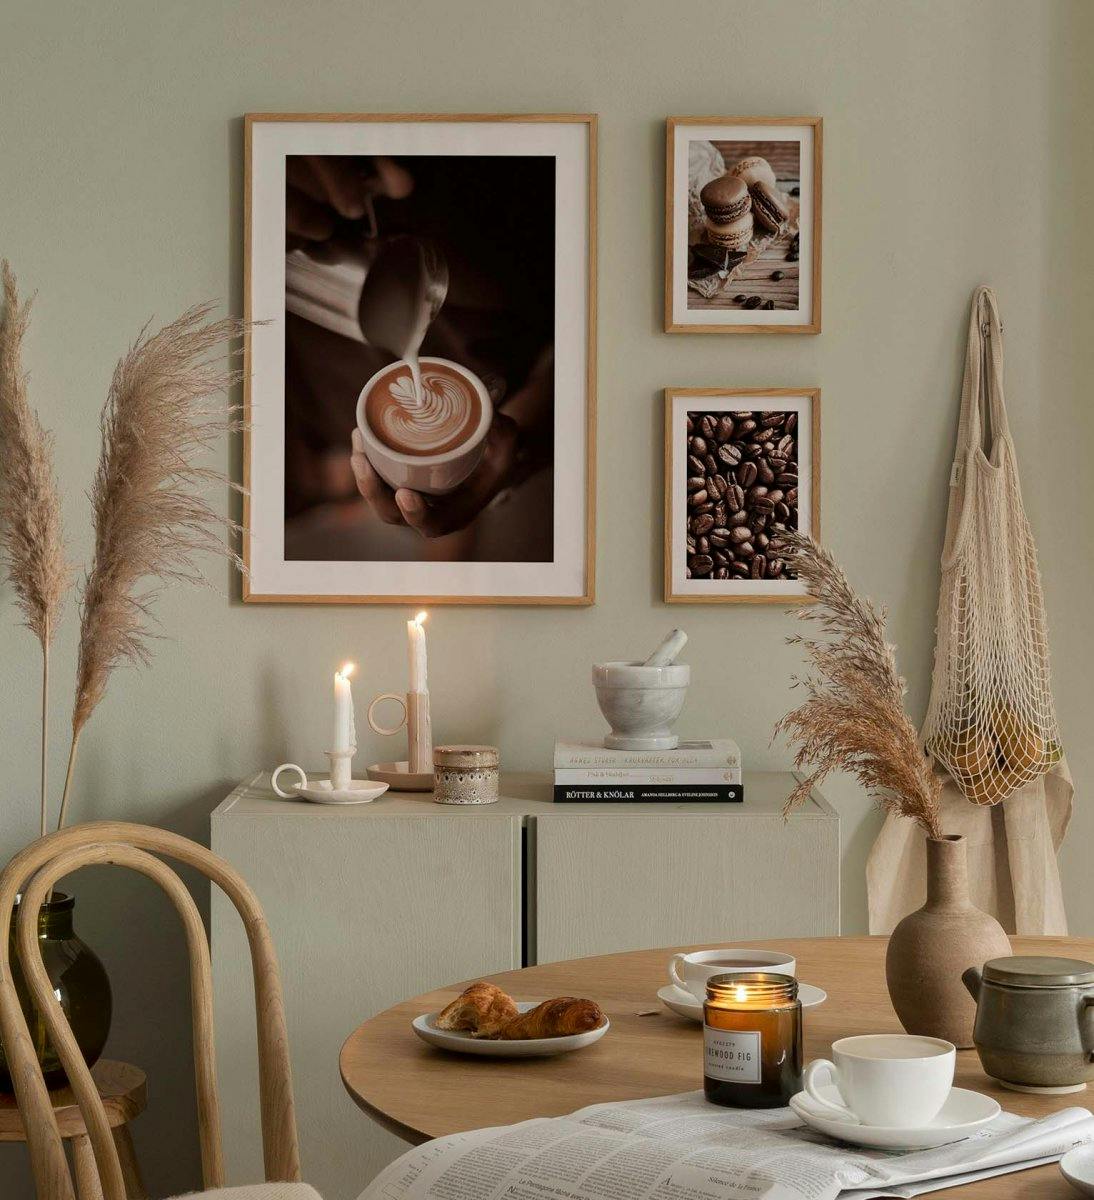 주방용 브라운과 베이지색 오크 프레임과 커피 프린트가 있는 주방 갤러리 벽